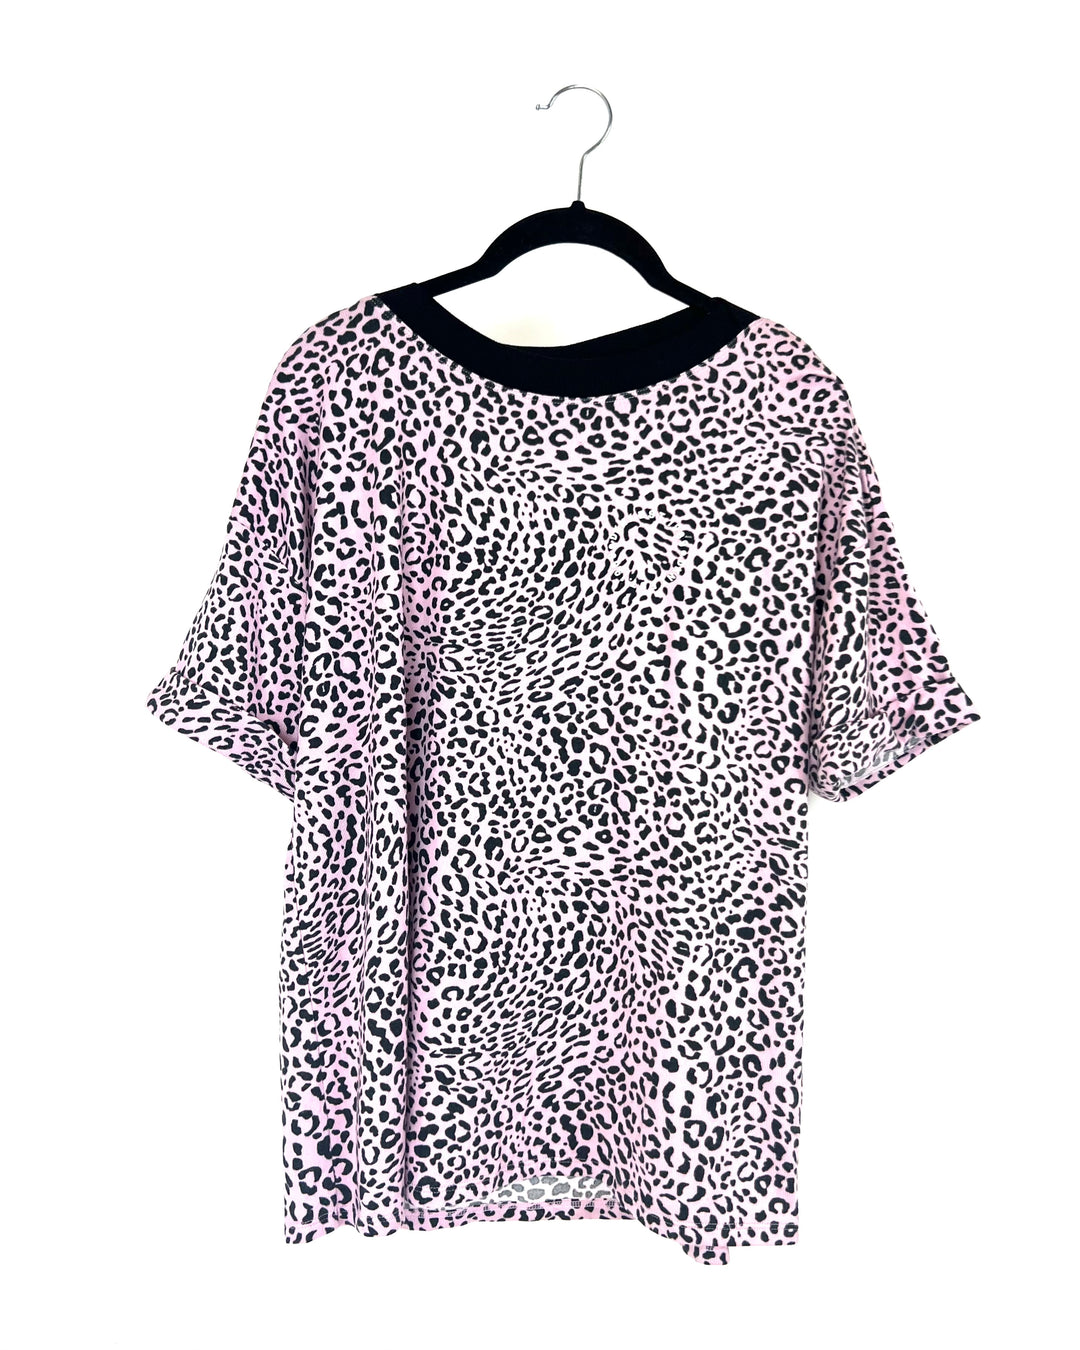 Soft Pink Leopard Sleep T-Shirt - Small